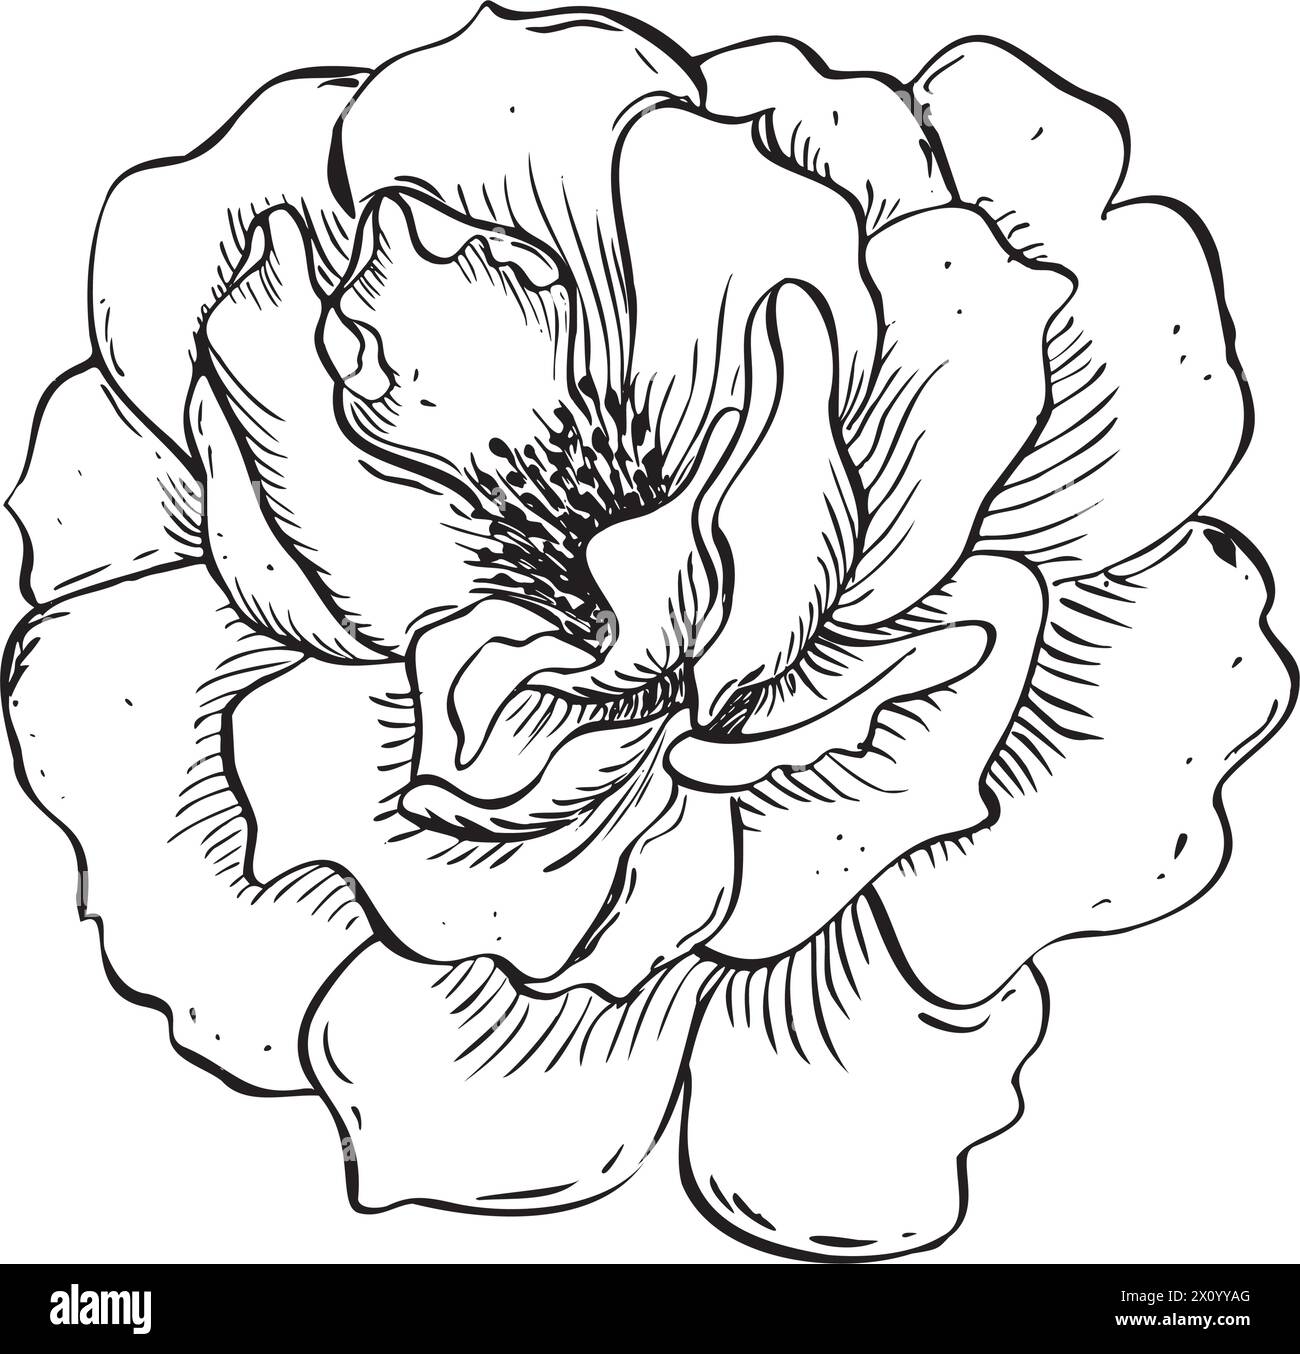 Fleur de rose sauvage. Illustration florale dessinée à la main de vecteur de la hanche rose fleurie dans le style de contour. Esquissez en noir et blanc sur fond isolé Illustration de Vecteur